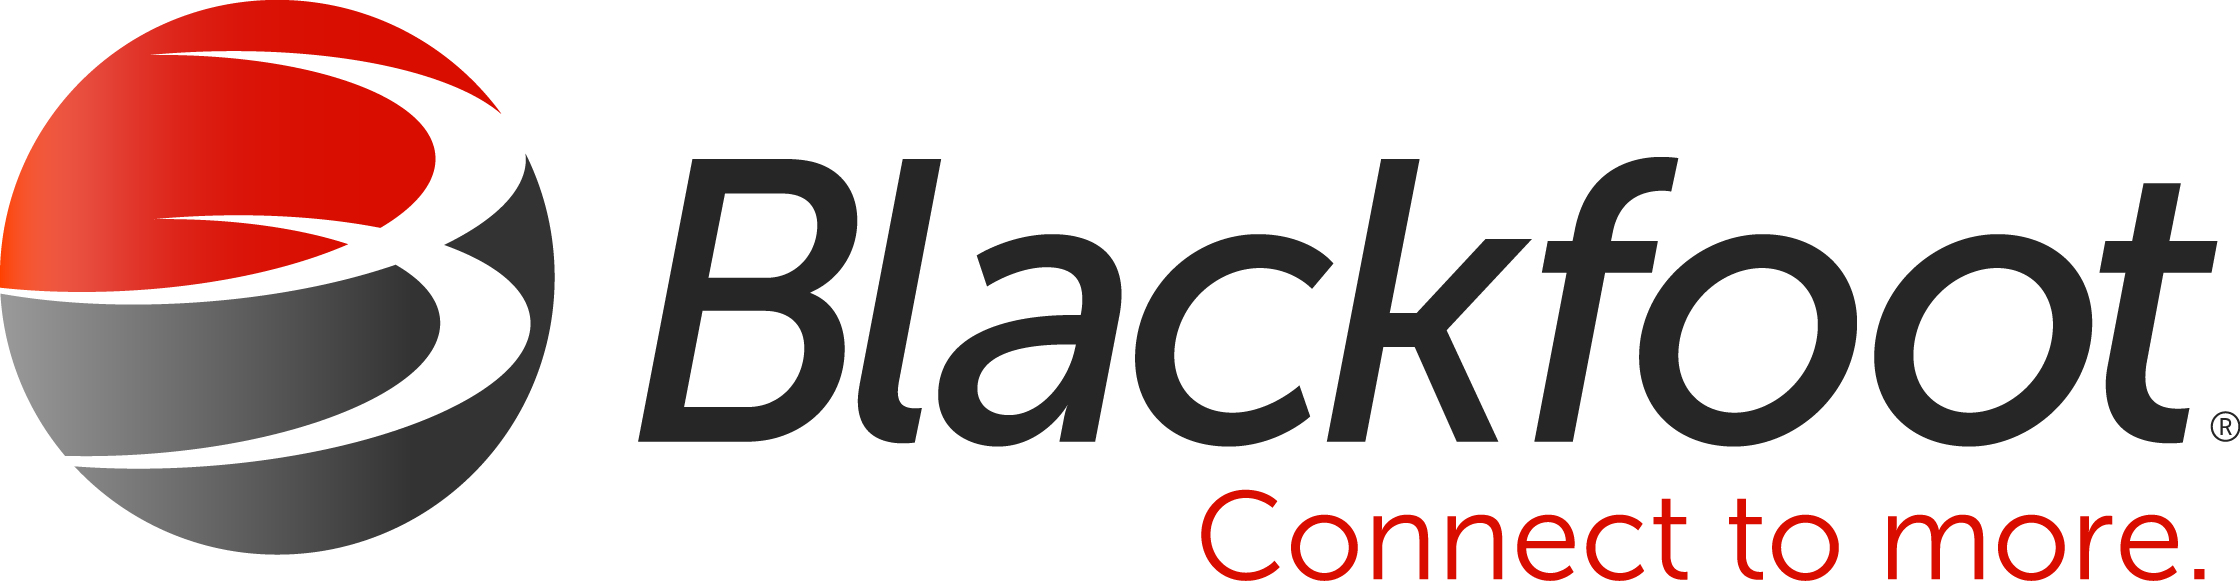 BLACKFOOT_Logo_Horiz_CMYK